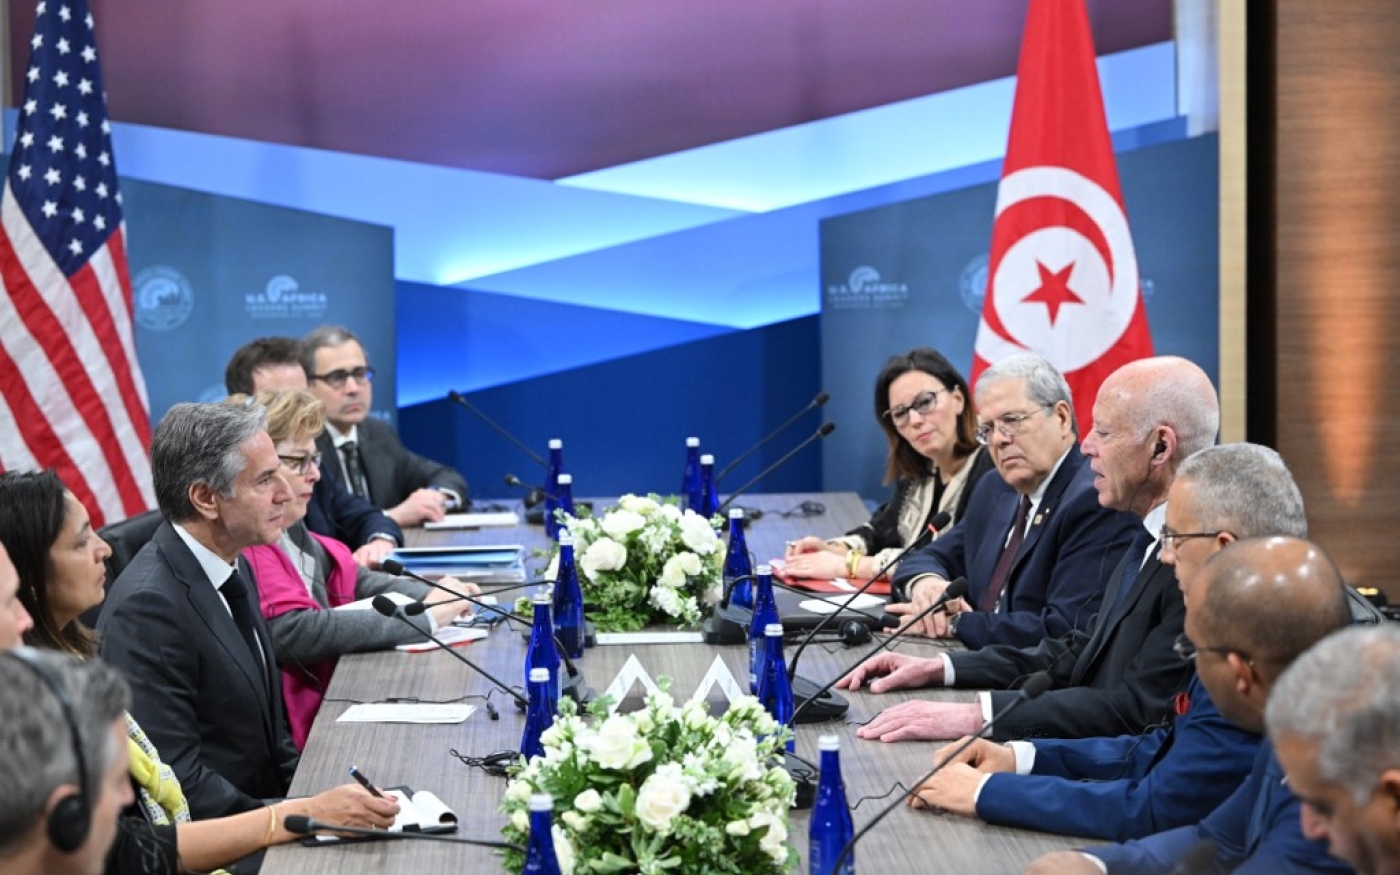 Le secrétaire d’État américain Antony Blinken (à gauche) rencontre le président tunisien Kais Saied (à droite) lors du Sommet des dirigeants États-Unis-Afrique, le 14 décembre 2022 à Washington, DC (AFP/Kevin Dietsche)